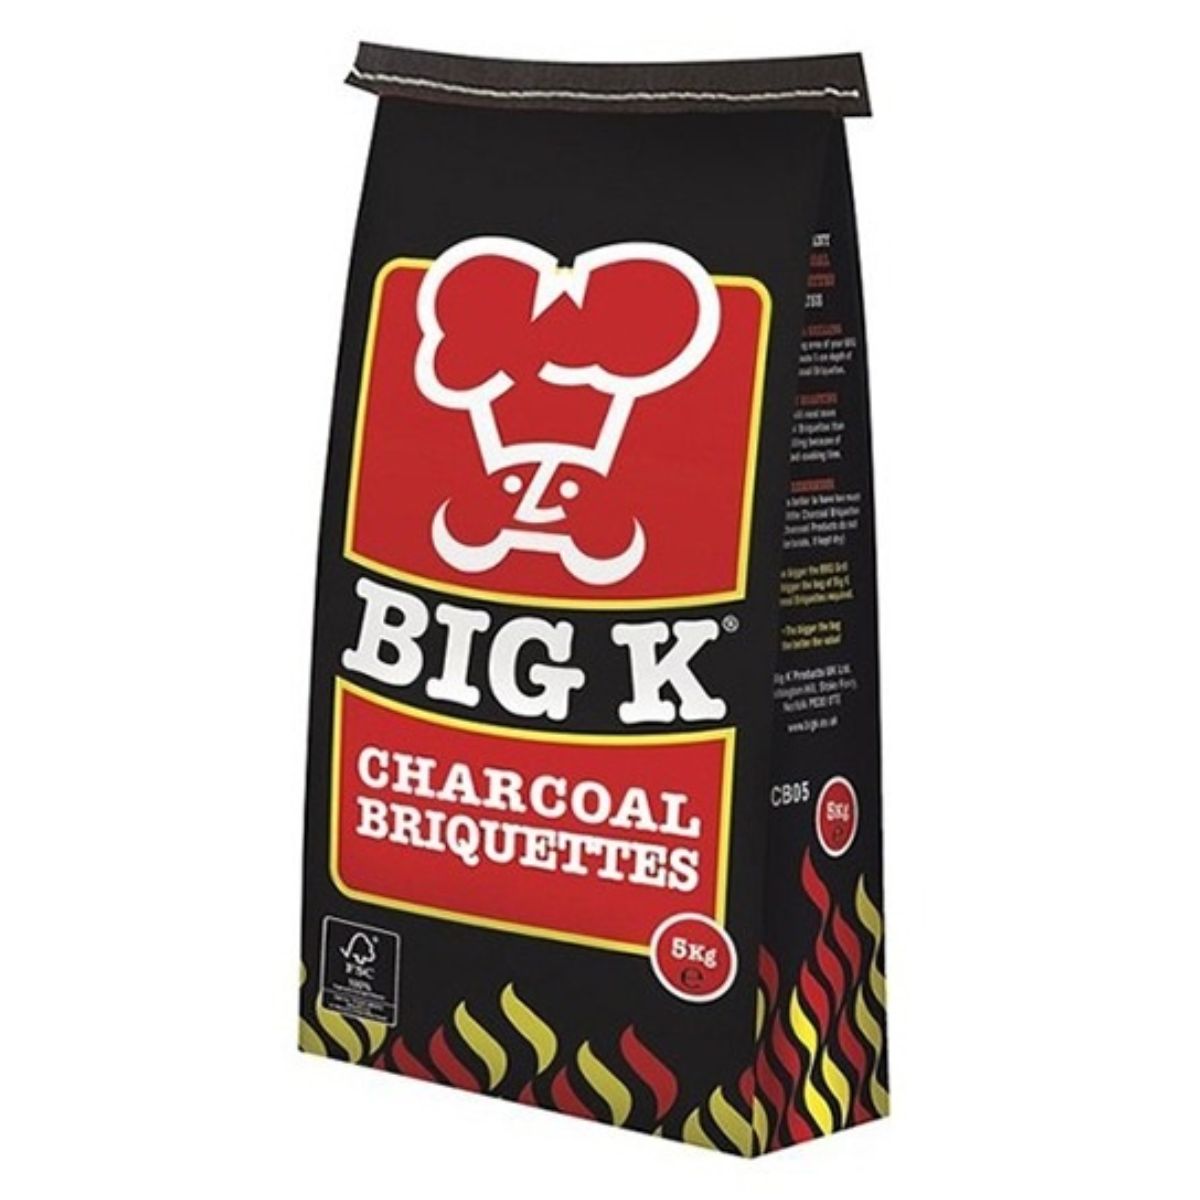 A bag of Big K - BBQ Charcoal Briquettes - 5kg.